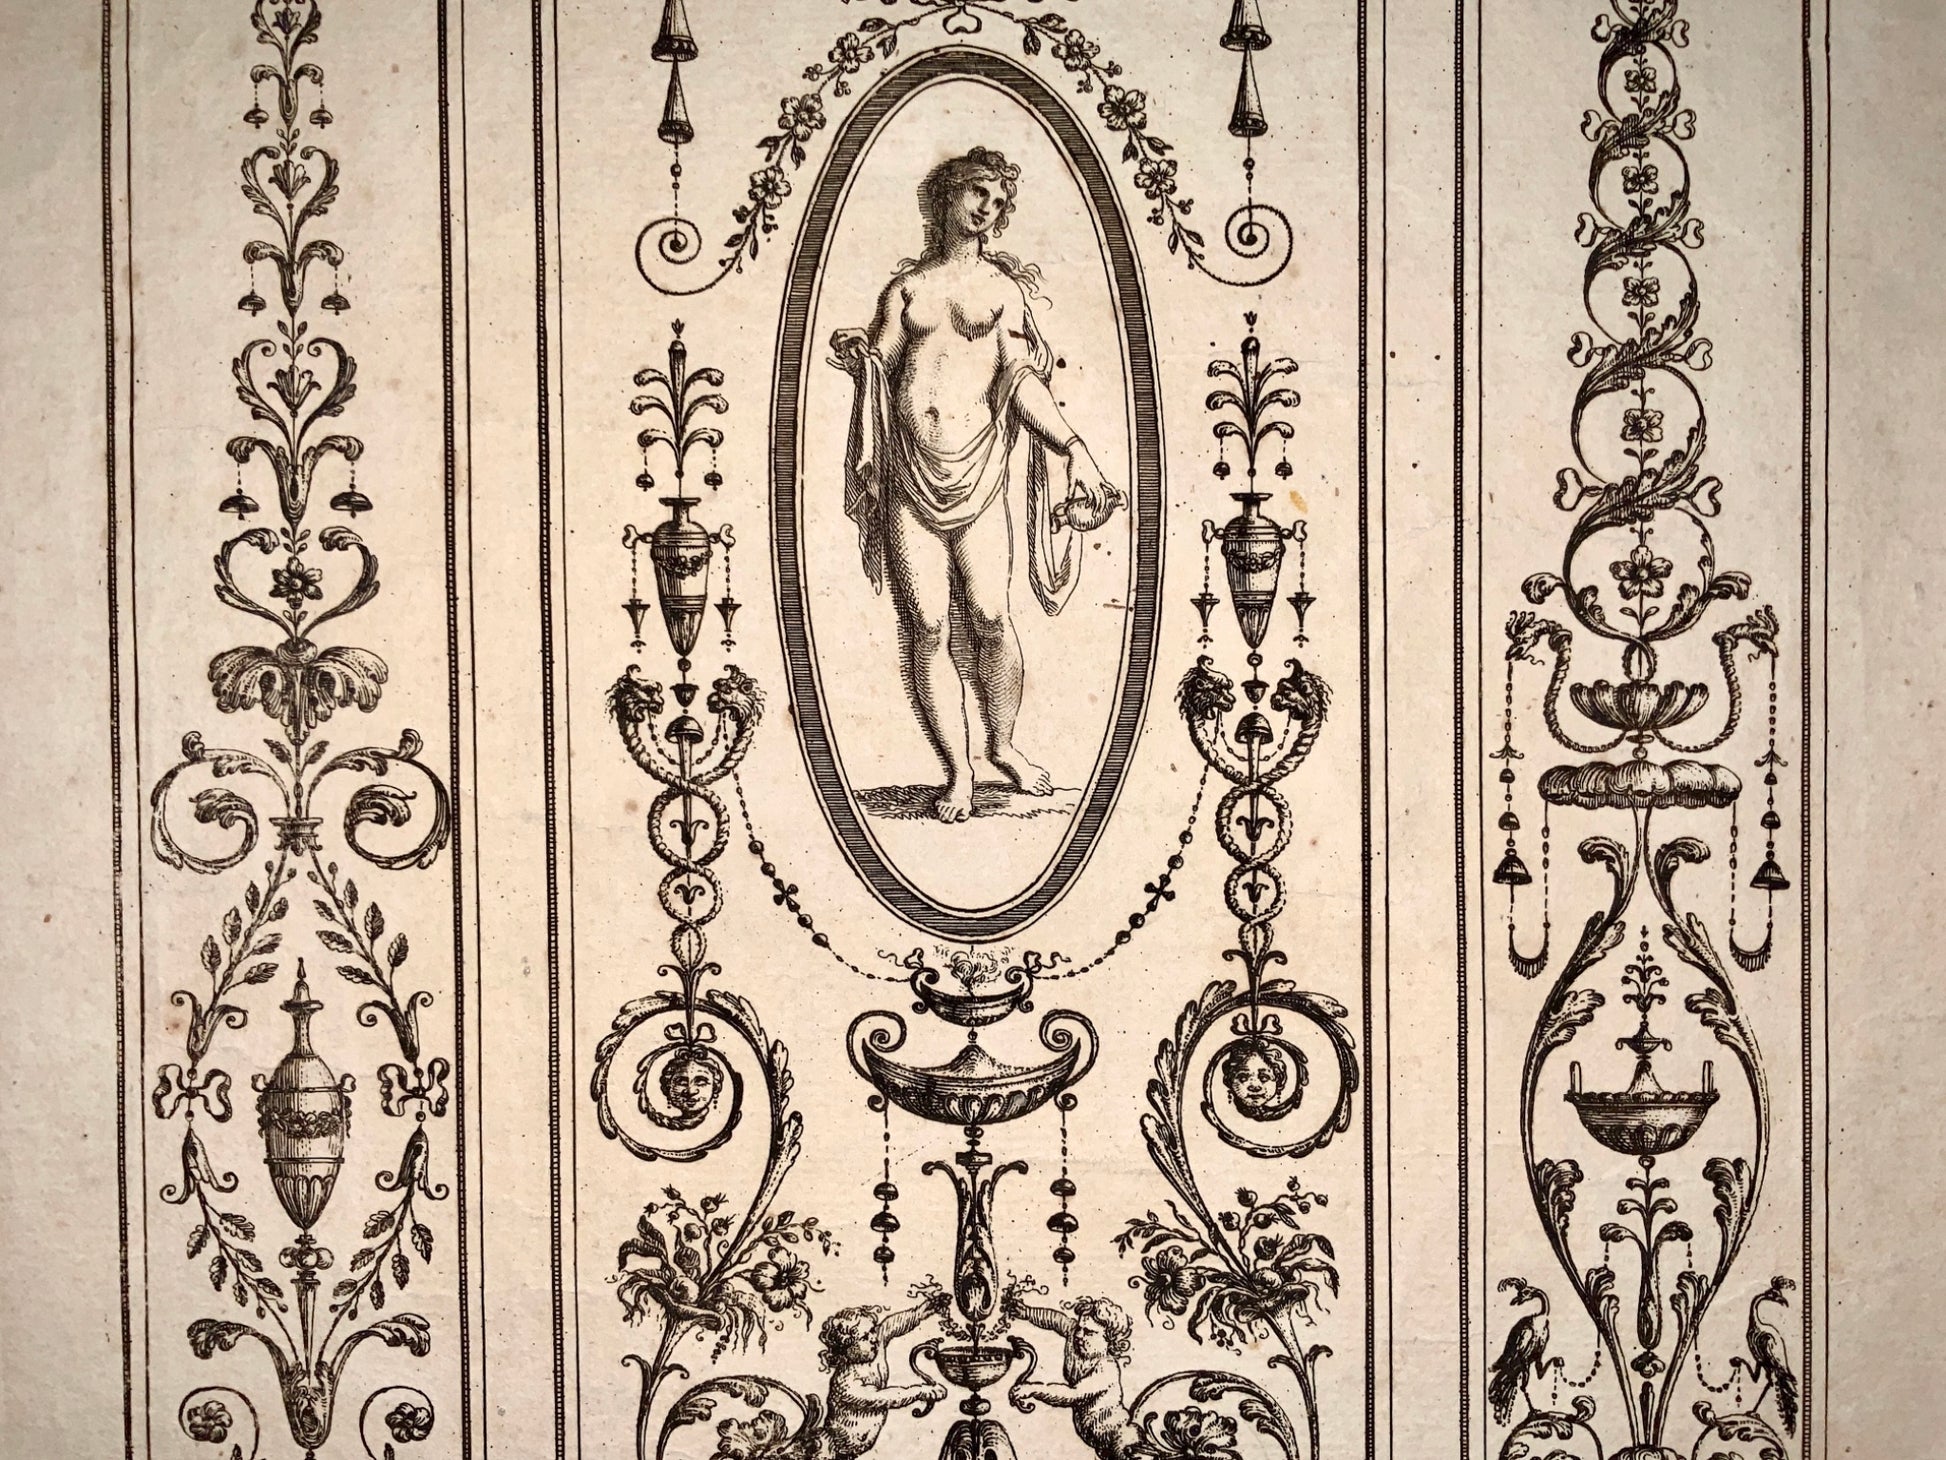 1780 Michel Angelo Pergolesi - Neo Classical Ornament - Large Folio